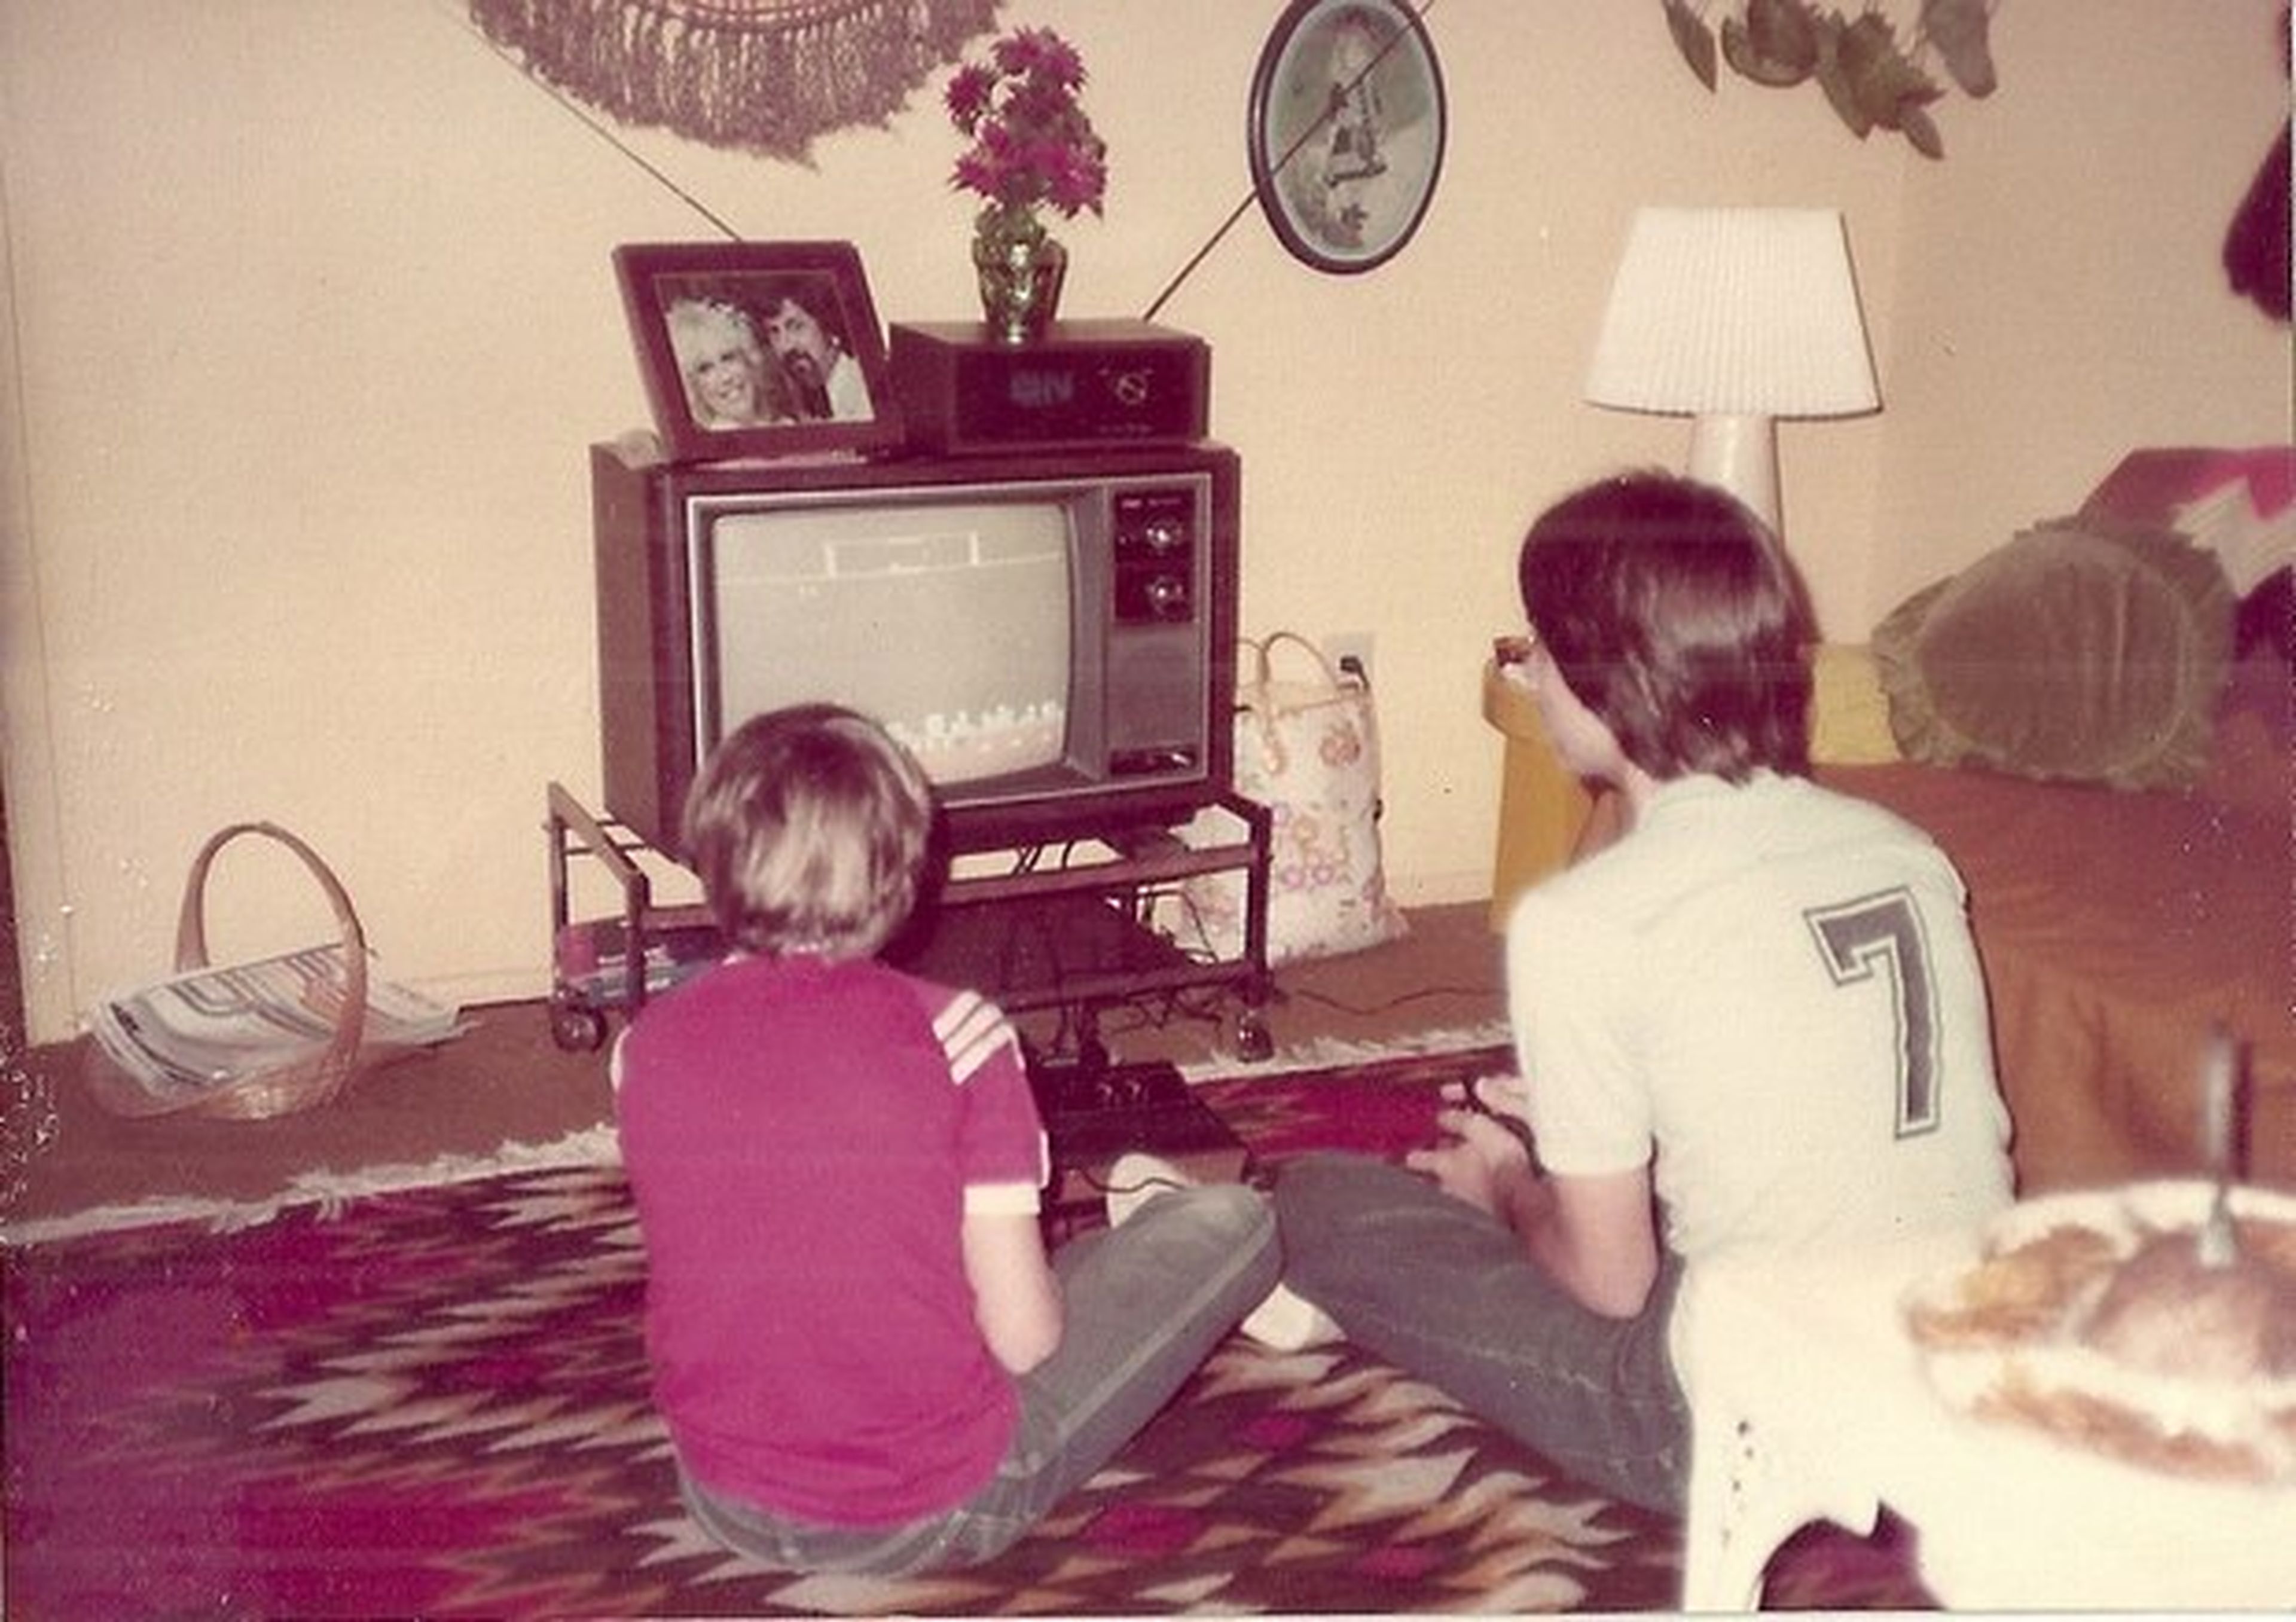 Videojuegos de hace 40 años